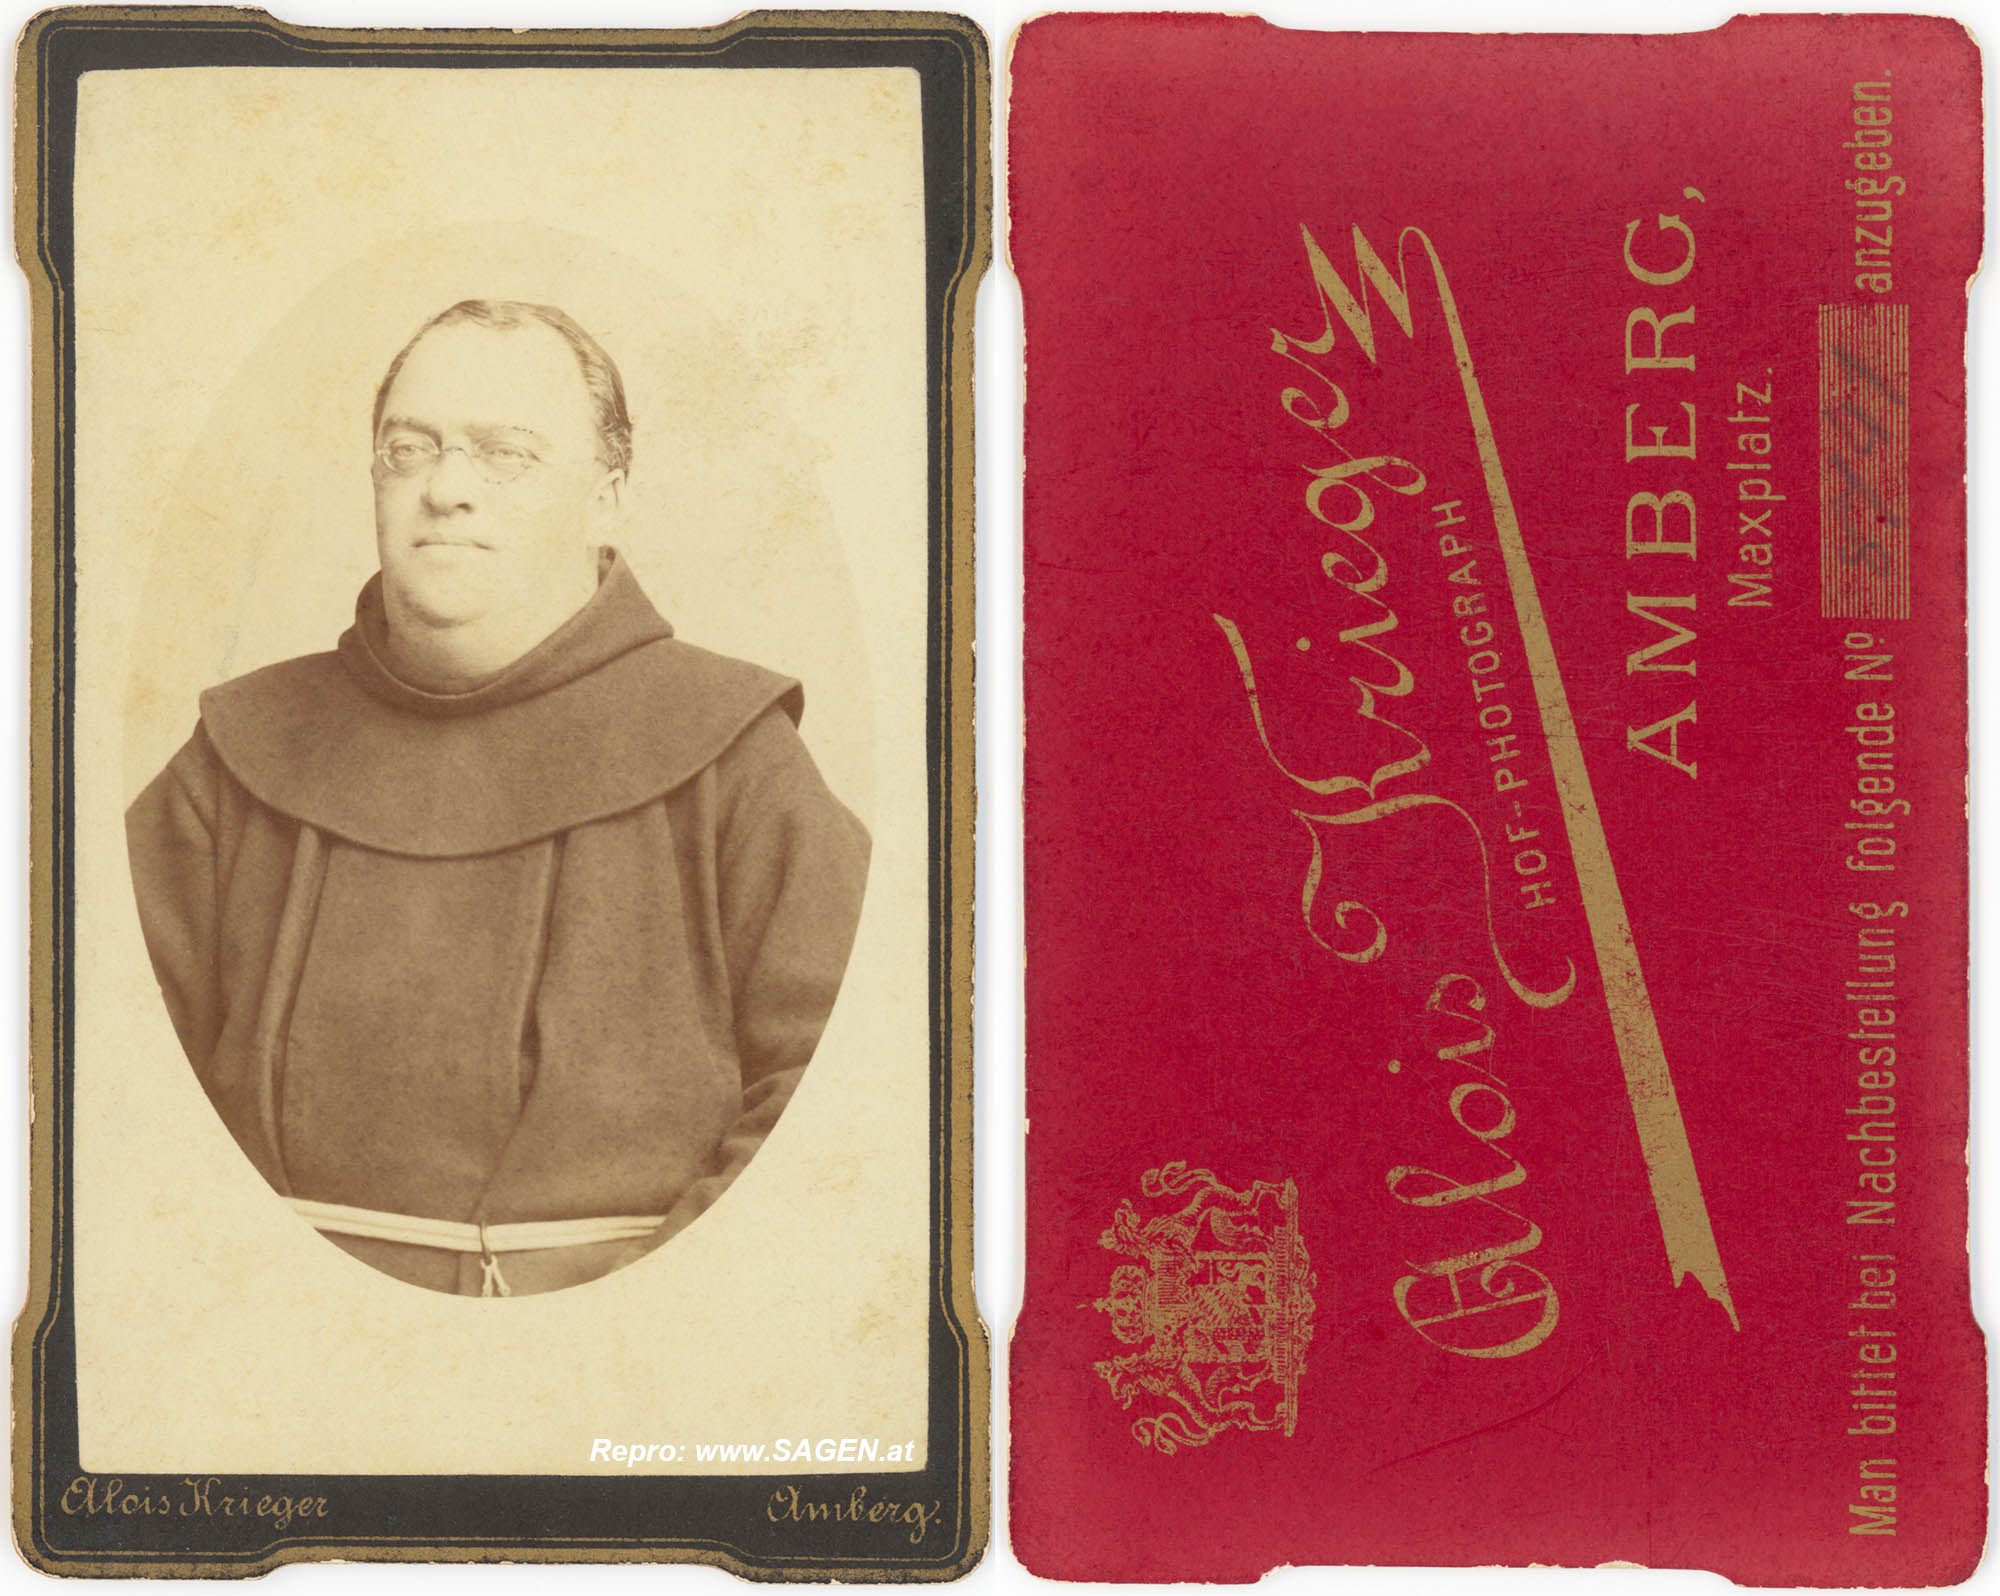 CdV Geistlicher, Alois Krieger Amberg, Bayern